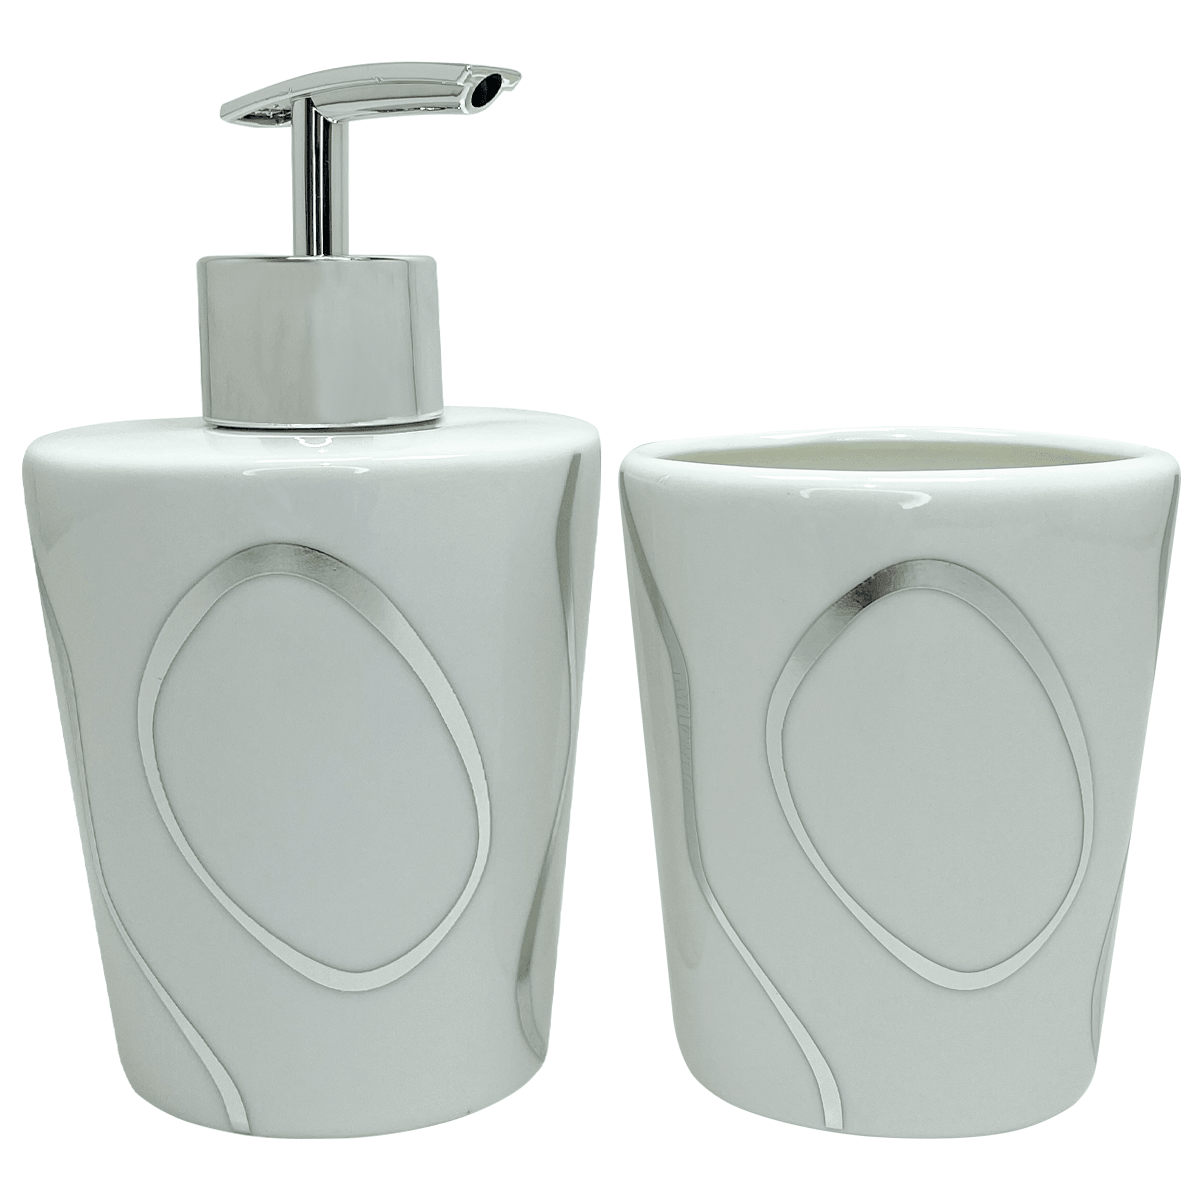 Kit Banheiro Saboneteira e Dispenser Porcelana Preto - Dekasa Utilidades